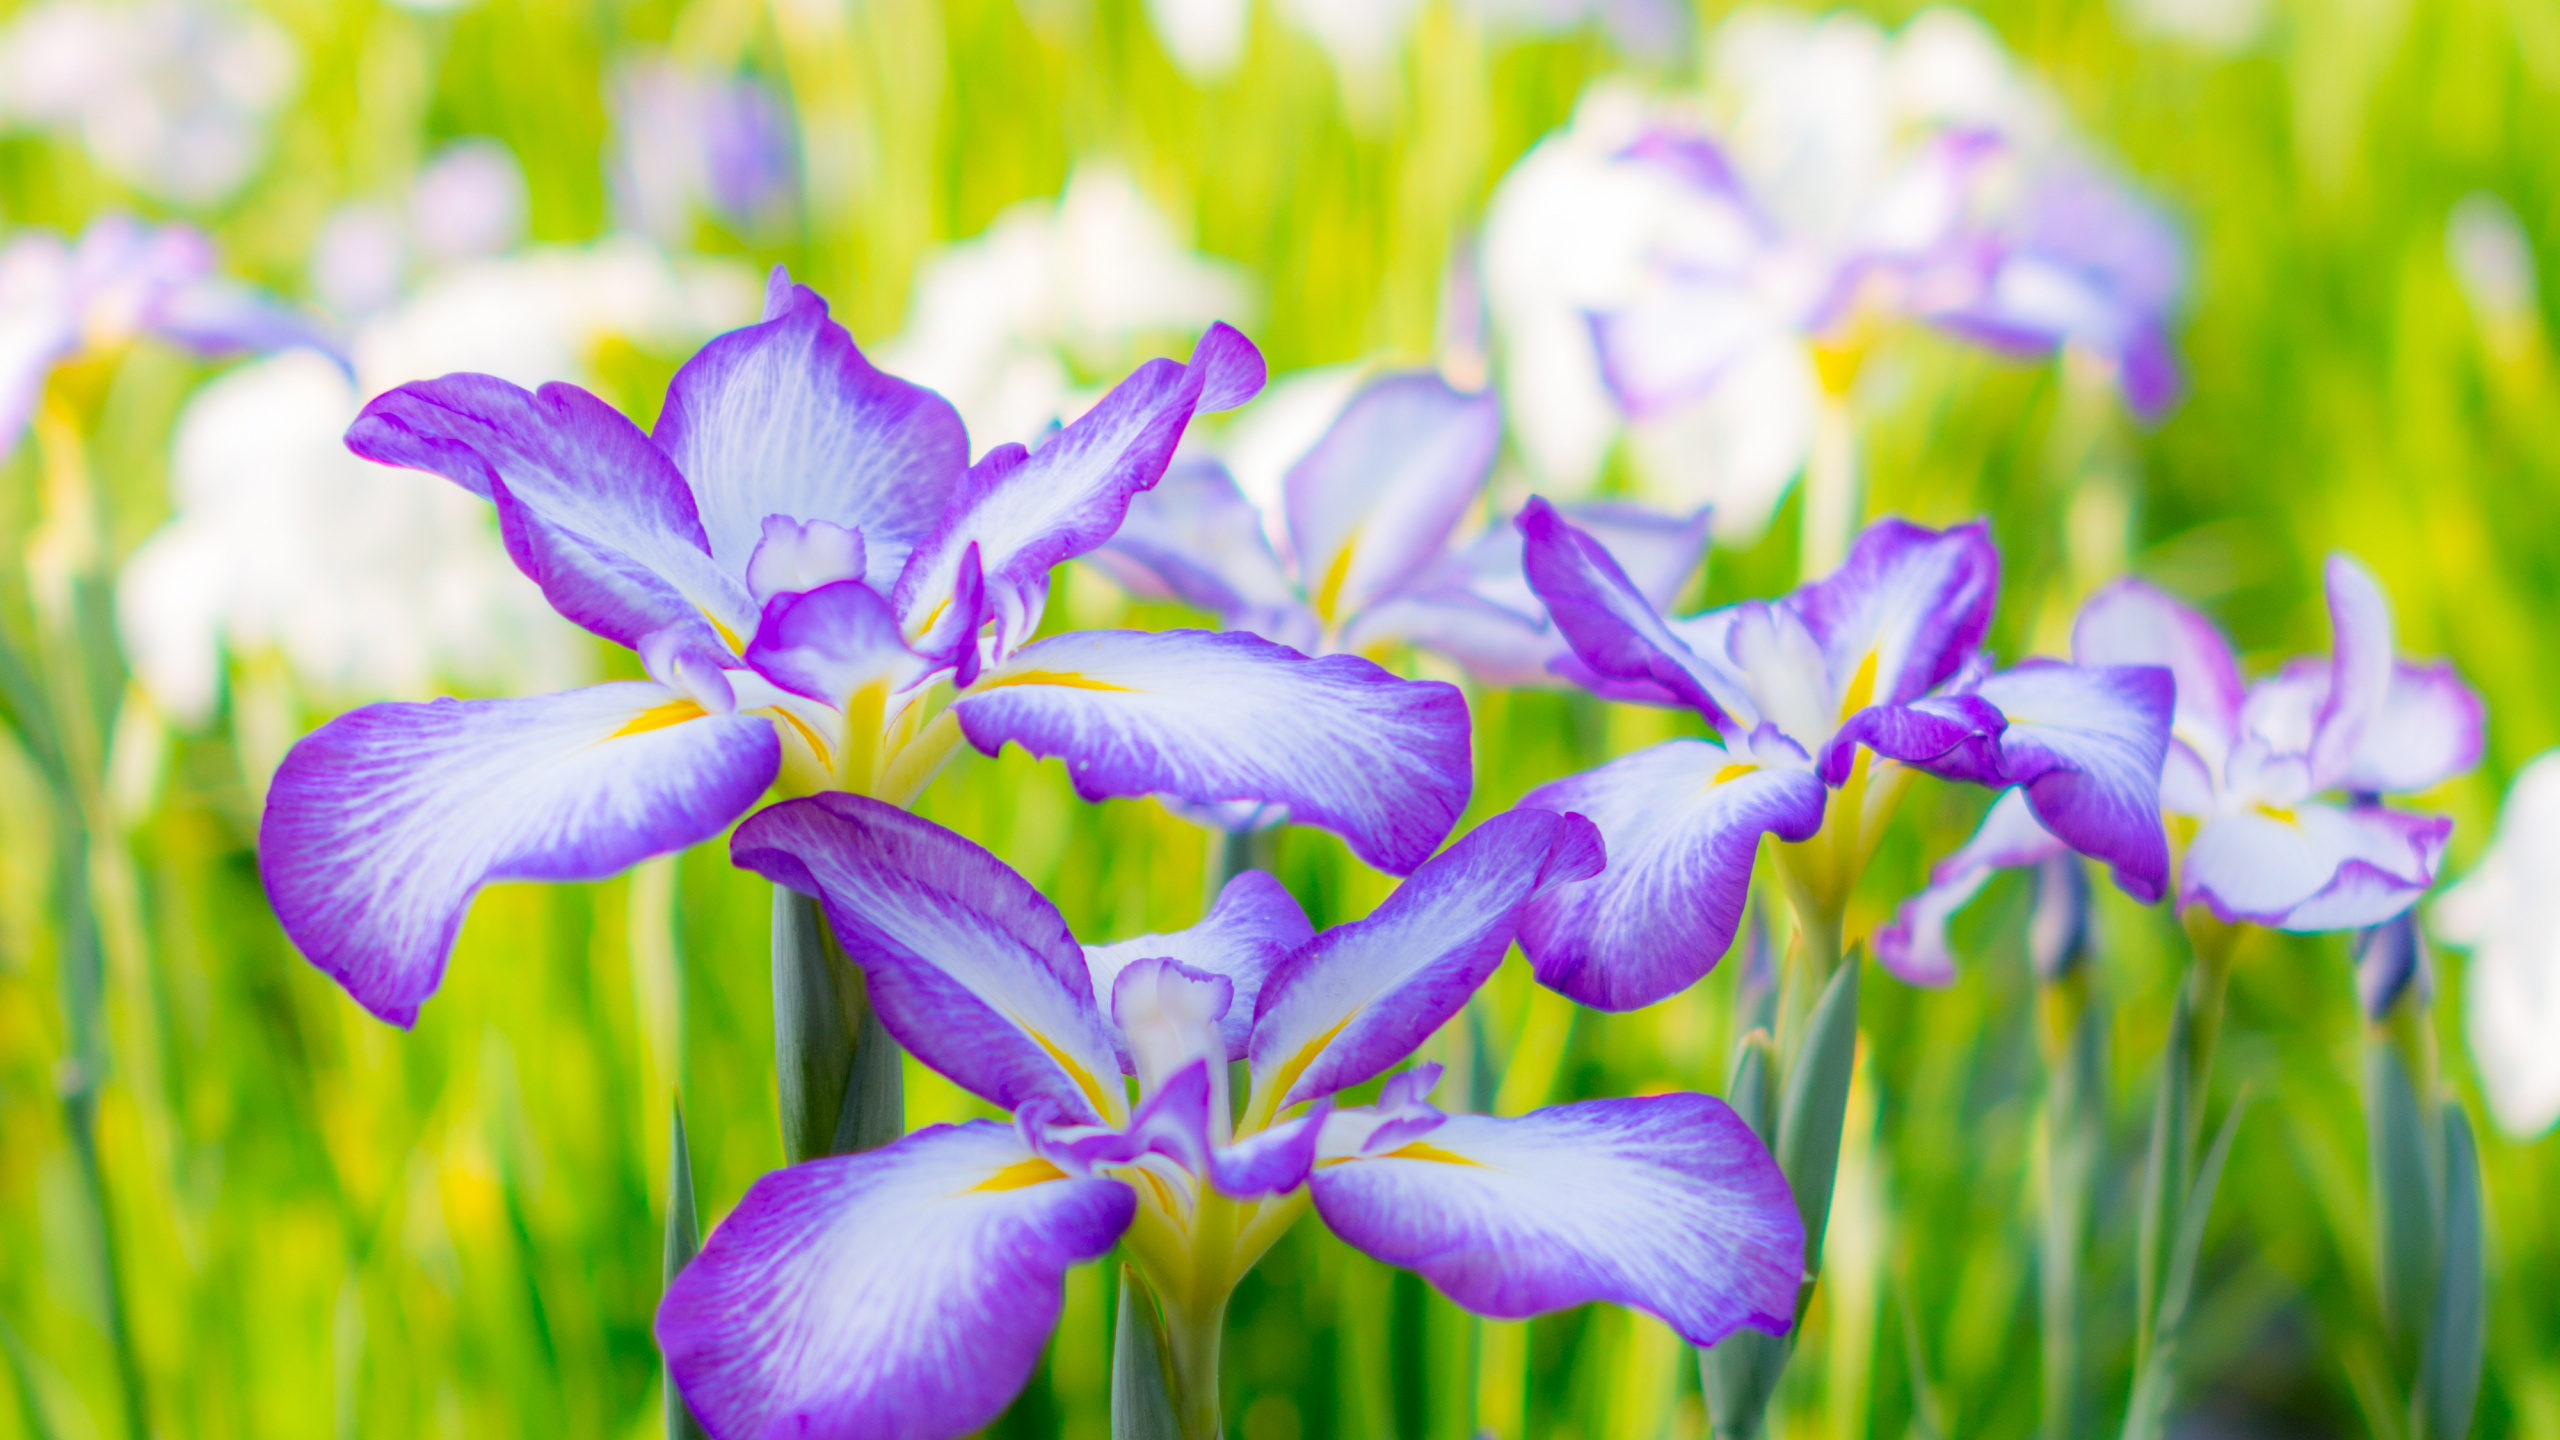 Purple and White Flowers in Tilt Shift Lens. Wallpaper in 2560x1440 Resolution